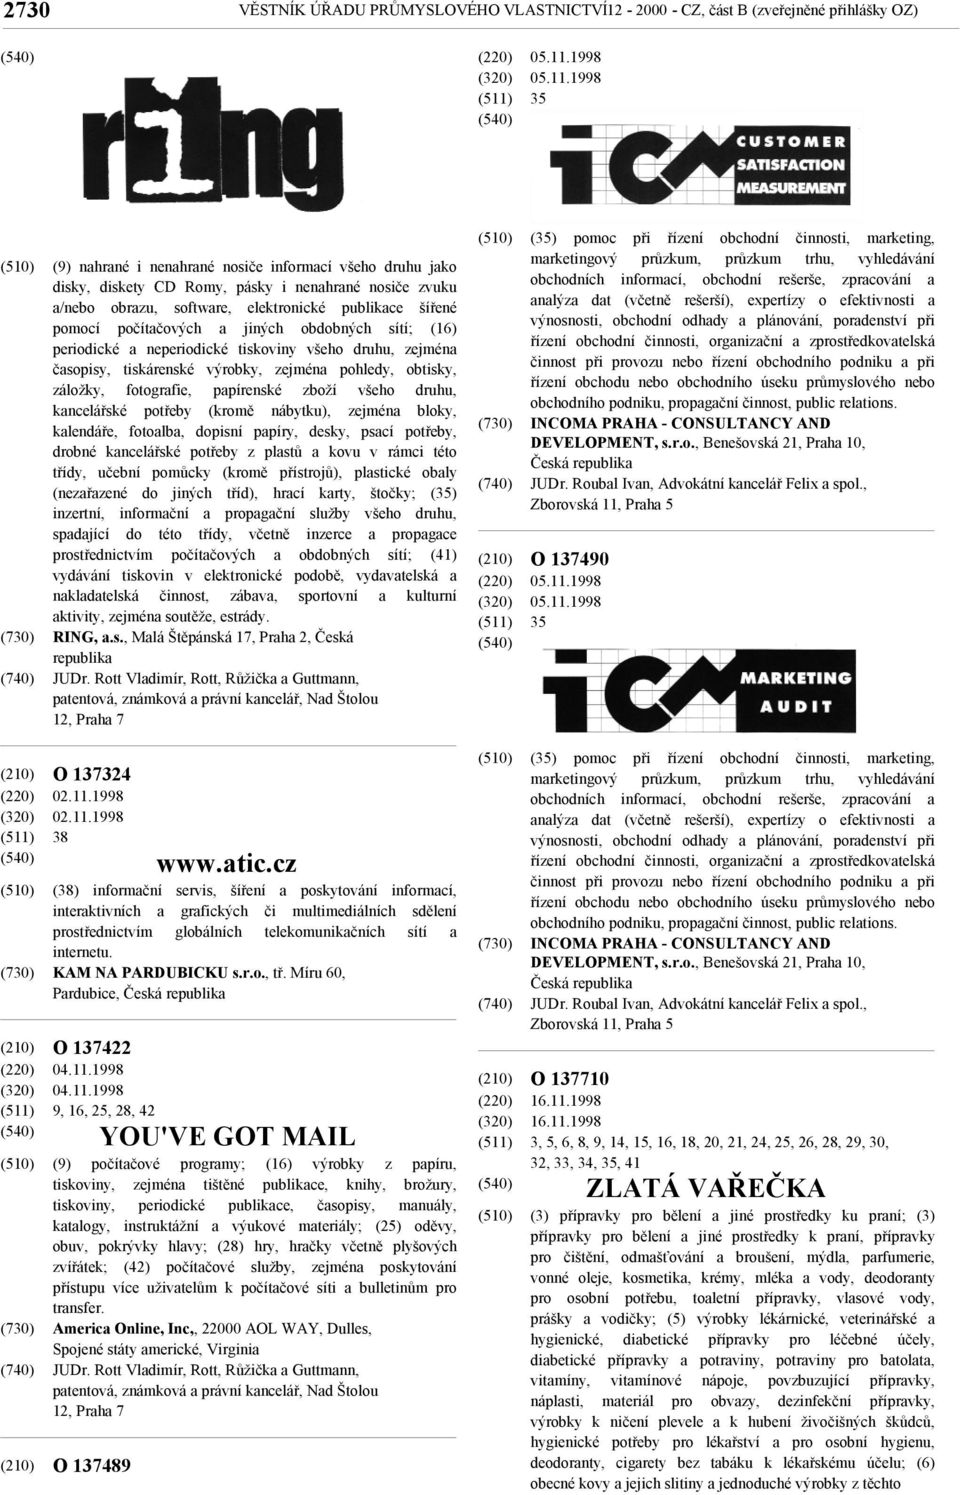 1998 35 (9) nahrané i nenahrané nosiče informací všeho druhu jako disky, diskety CD Romy, pásky i nenahrané nosiče zvuku a/nebo obrazu, software, elektronické publikace šířené pomocí počítačových a